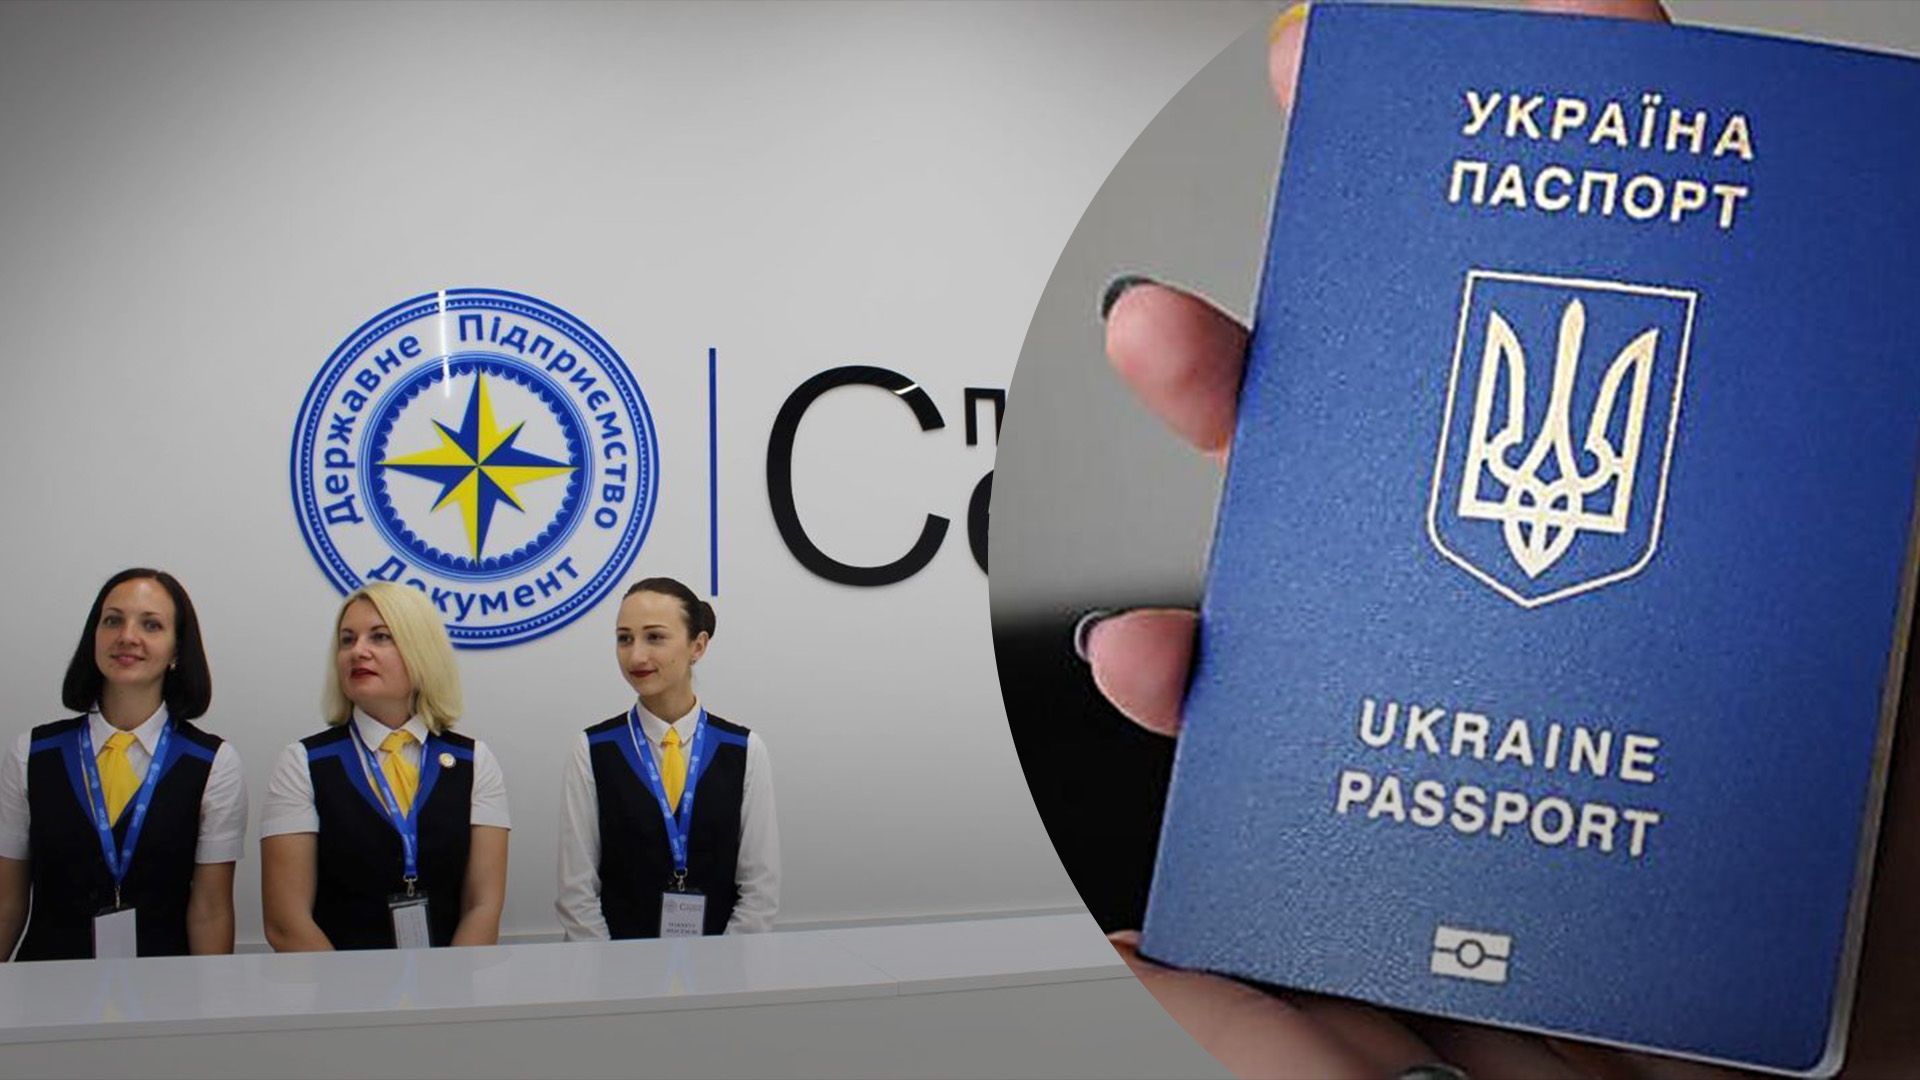 Зарубежные паспортные сервисы выдают документы в тестовом режиме